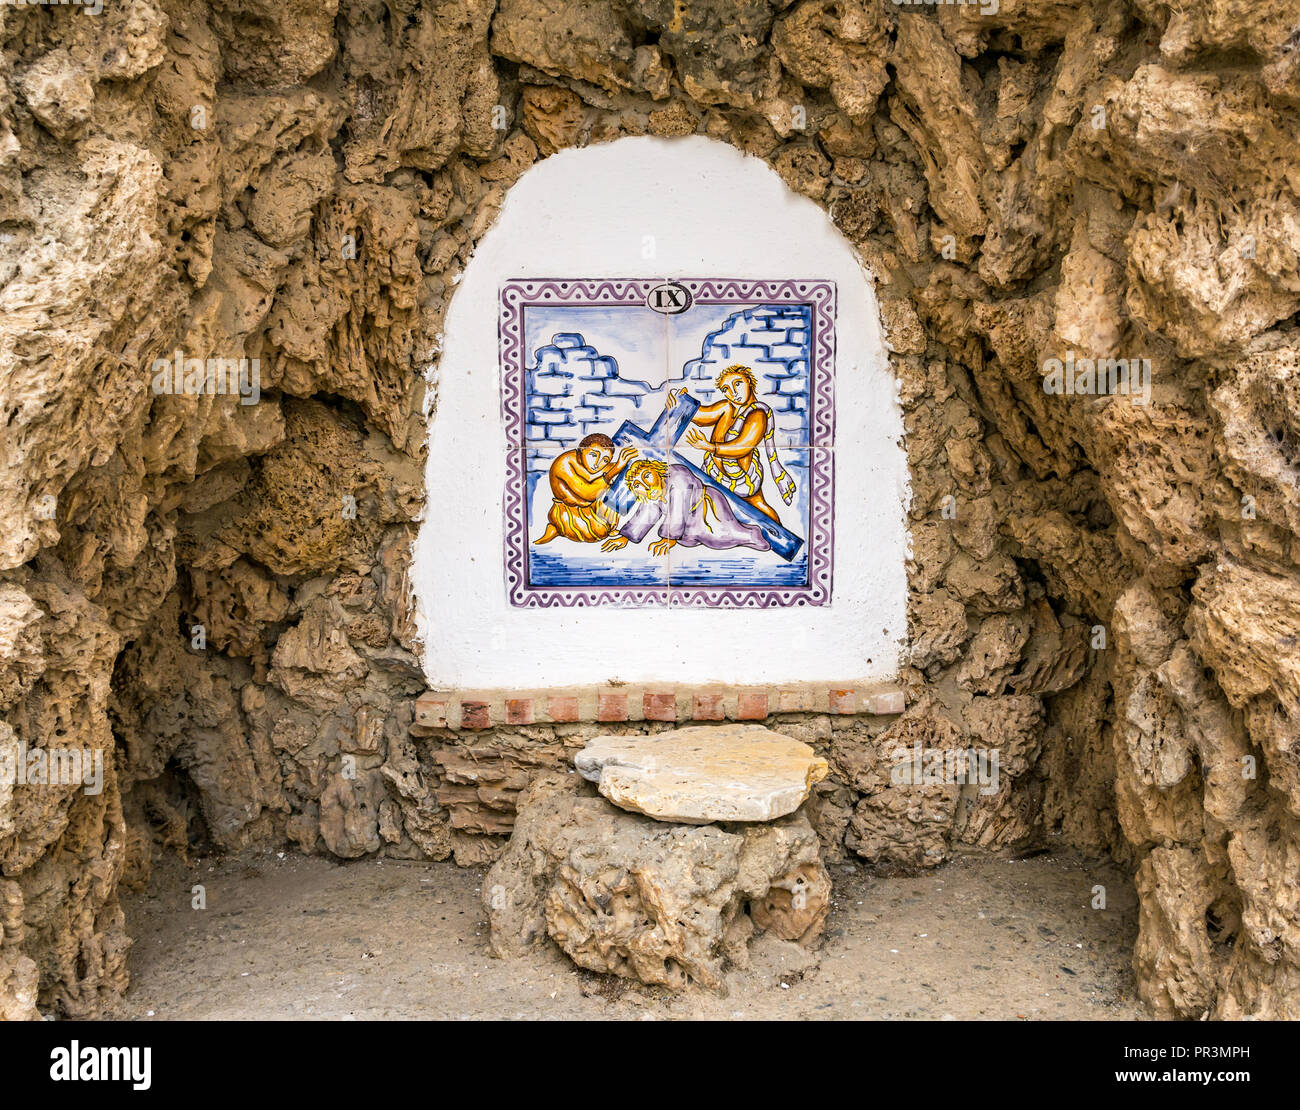 Bunte Kacheln an der Wand, die Katholischen Glauben 9. Station des Kreuzes, Salares, Axarquia, Andalusien, Spanien Stockfoto